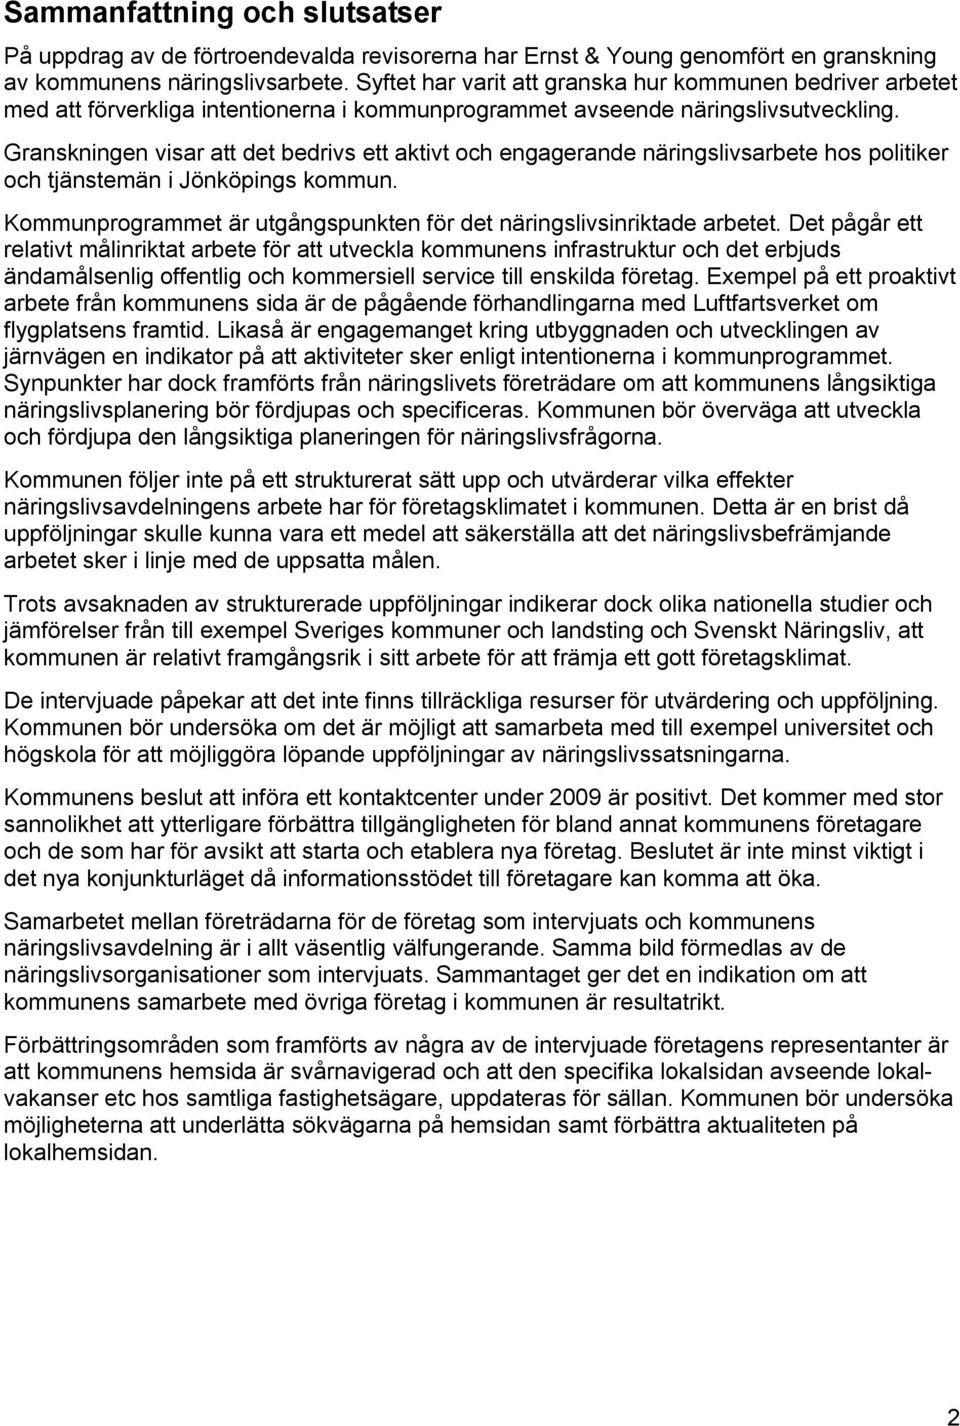 Granskningen visar att det bedrivs ett aktivt och engagerande näringslivsarbete hos politiker och tjänstemän i Jönköpings kommun.